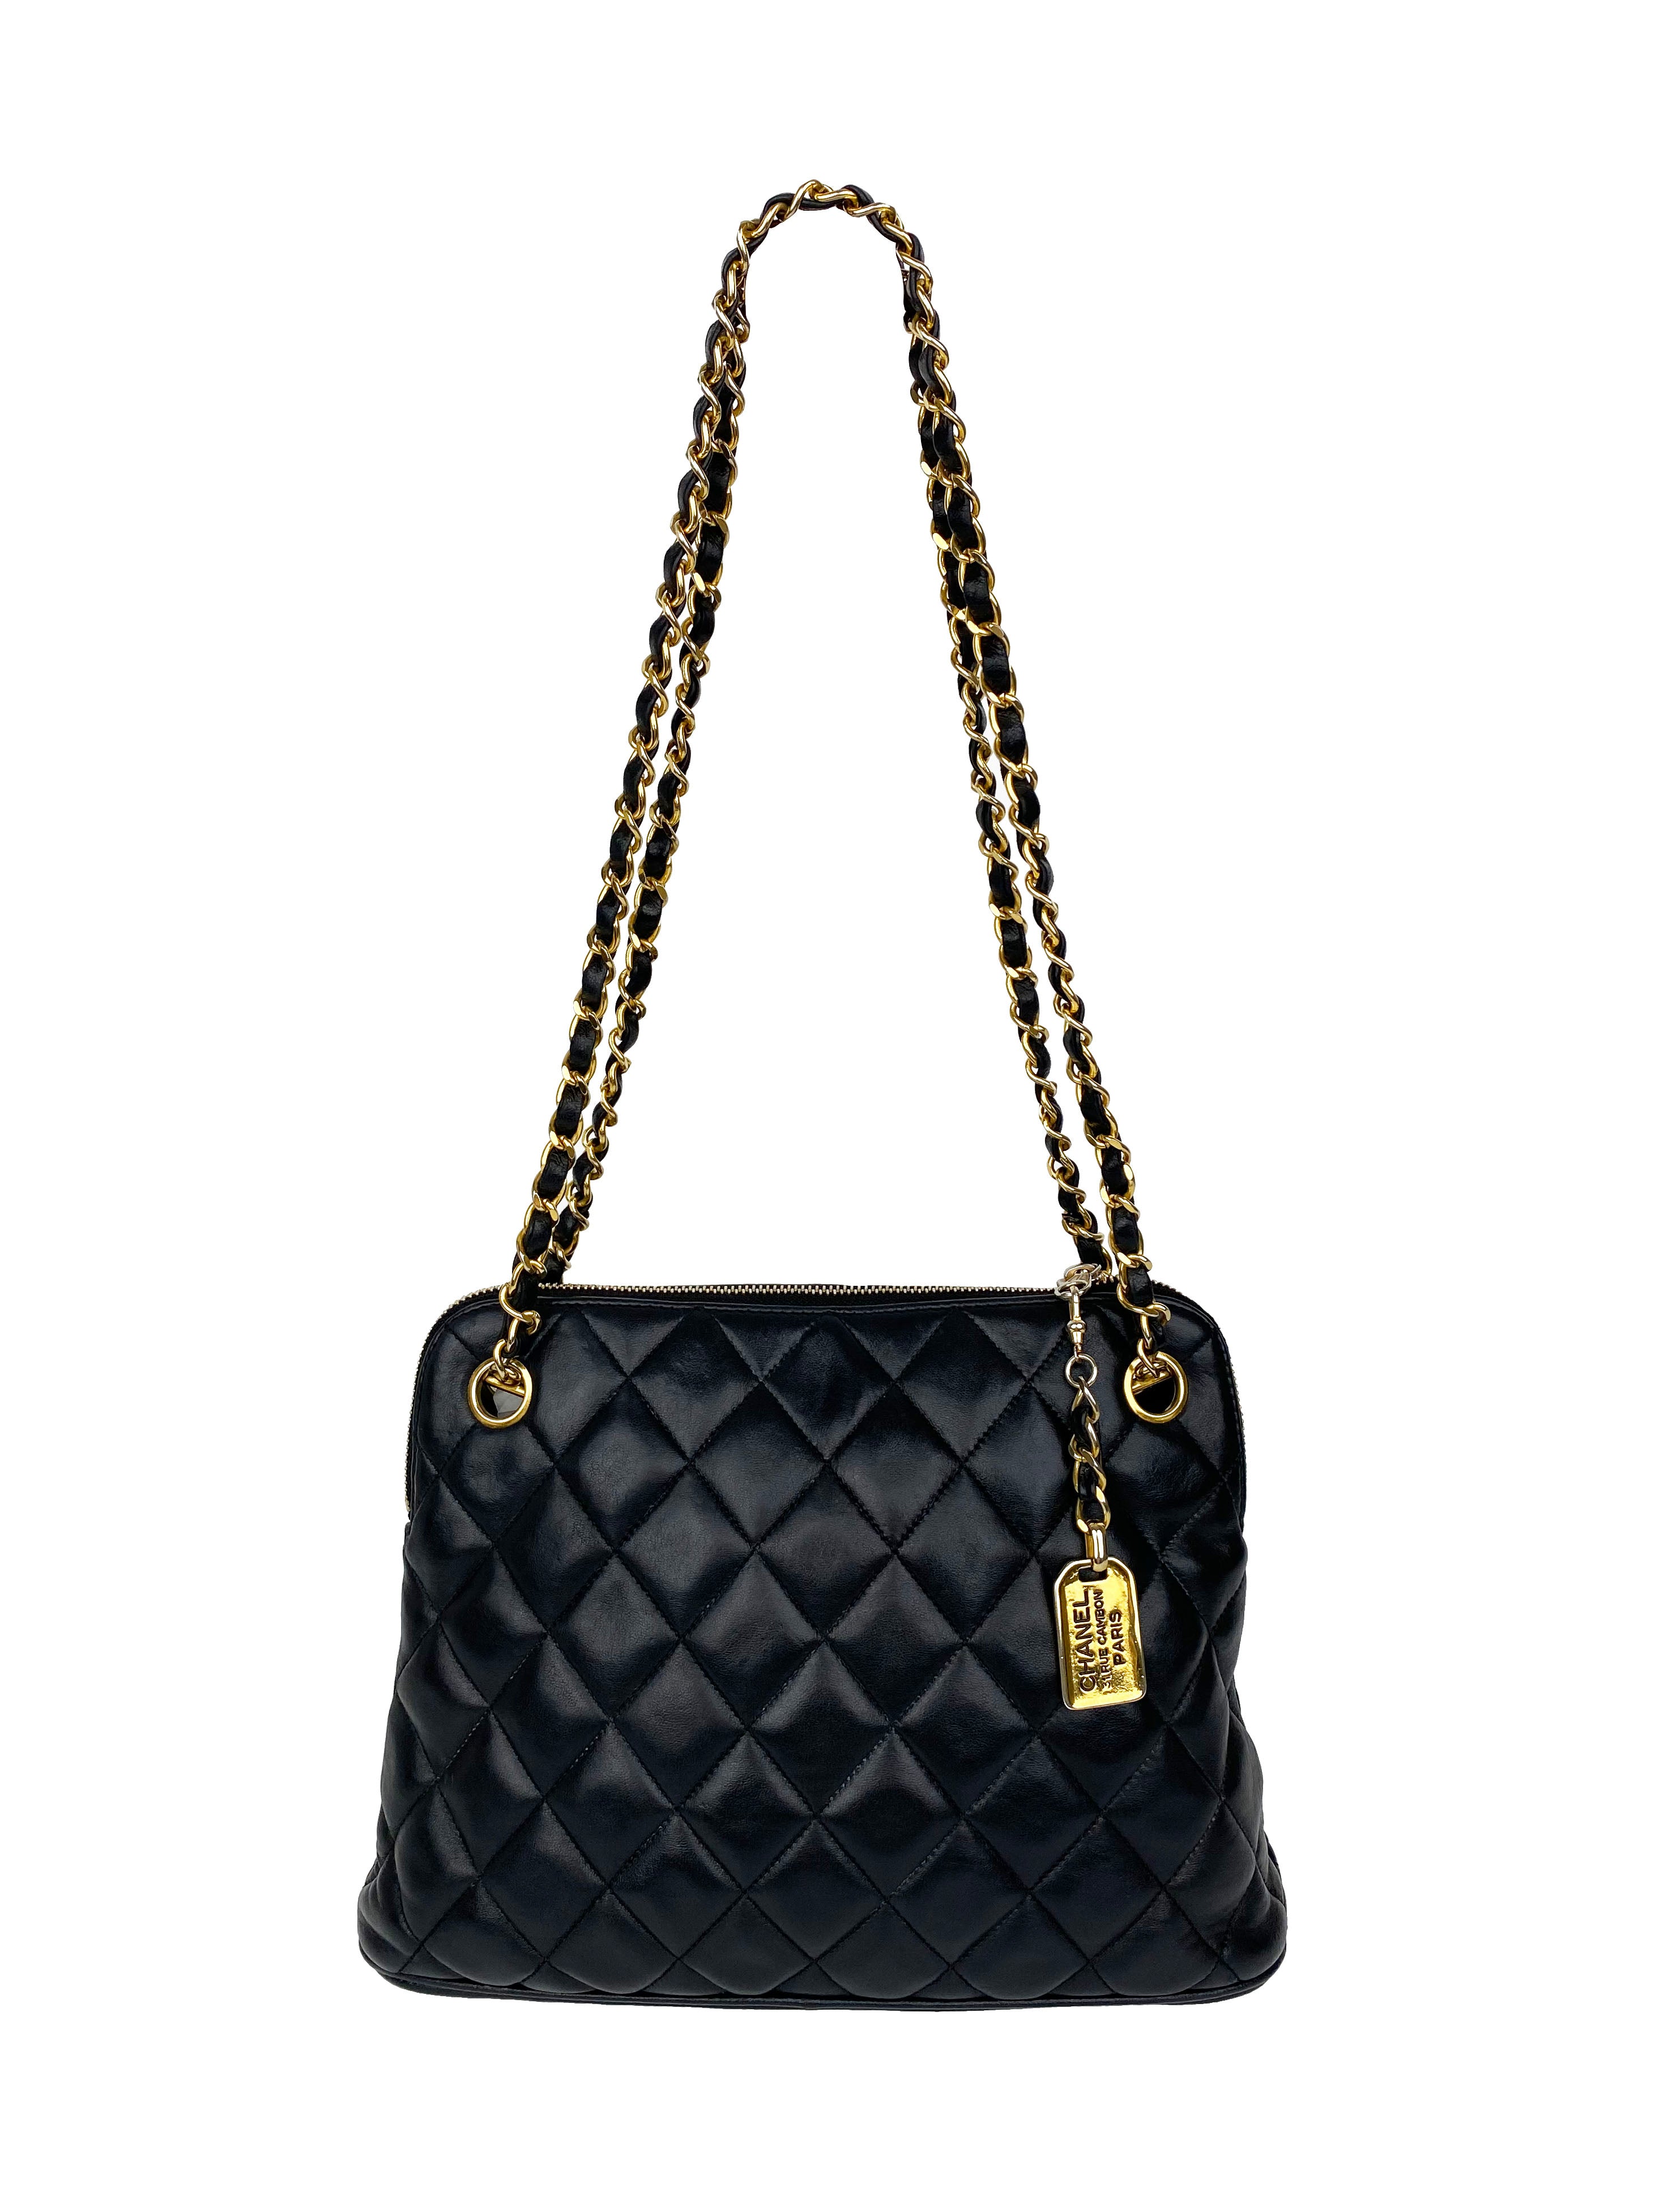 Chanel Black Vintage 90s Lambskin Shoulder Bag